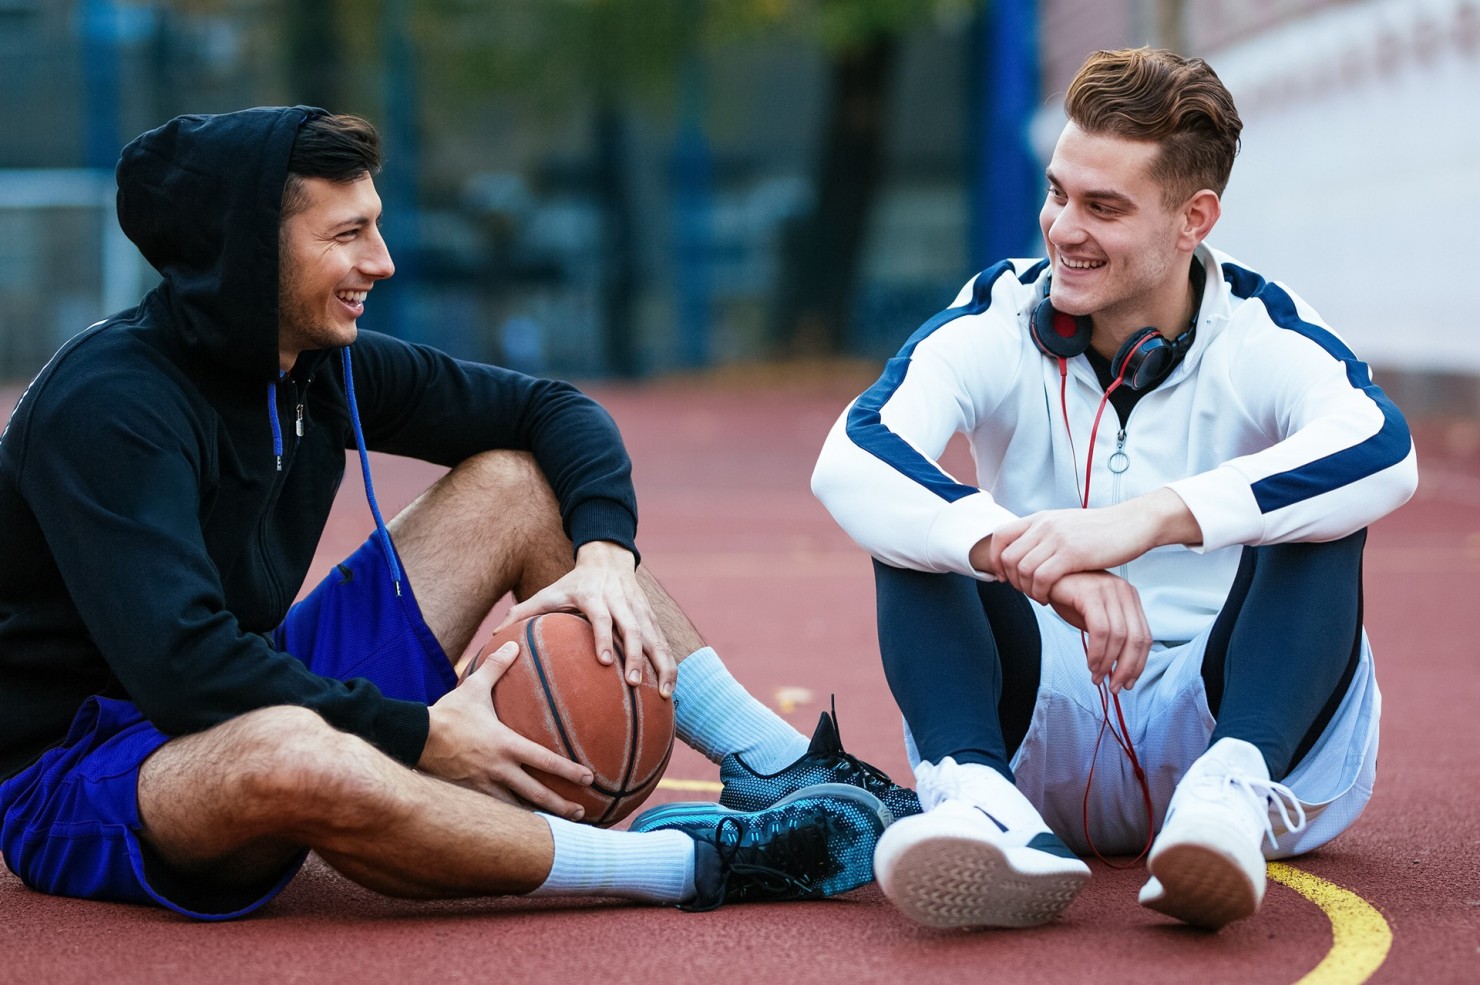 Zwei Basketballspieler sitzen mit Ball auf dem Spielfeld.